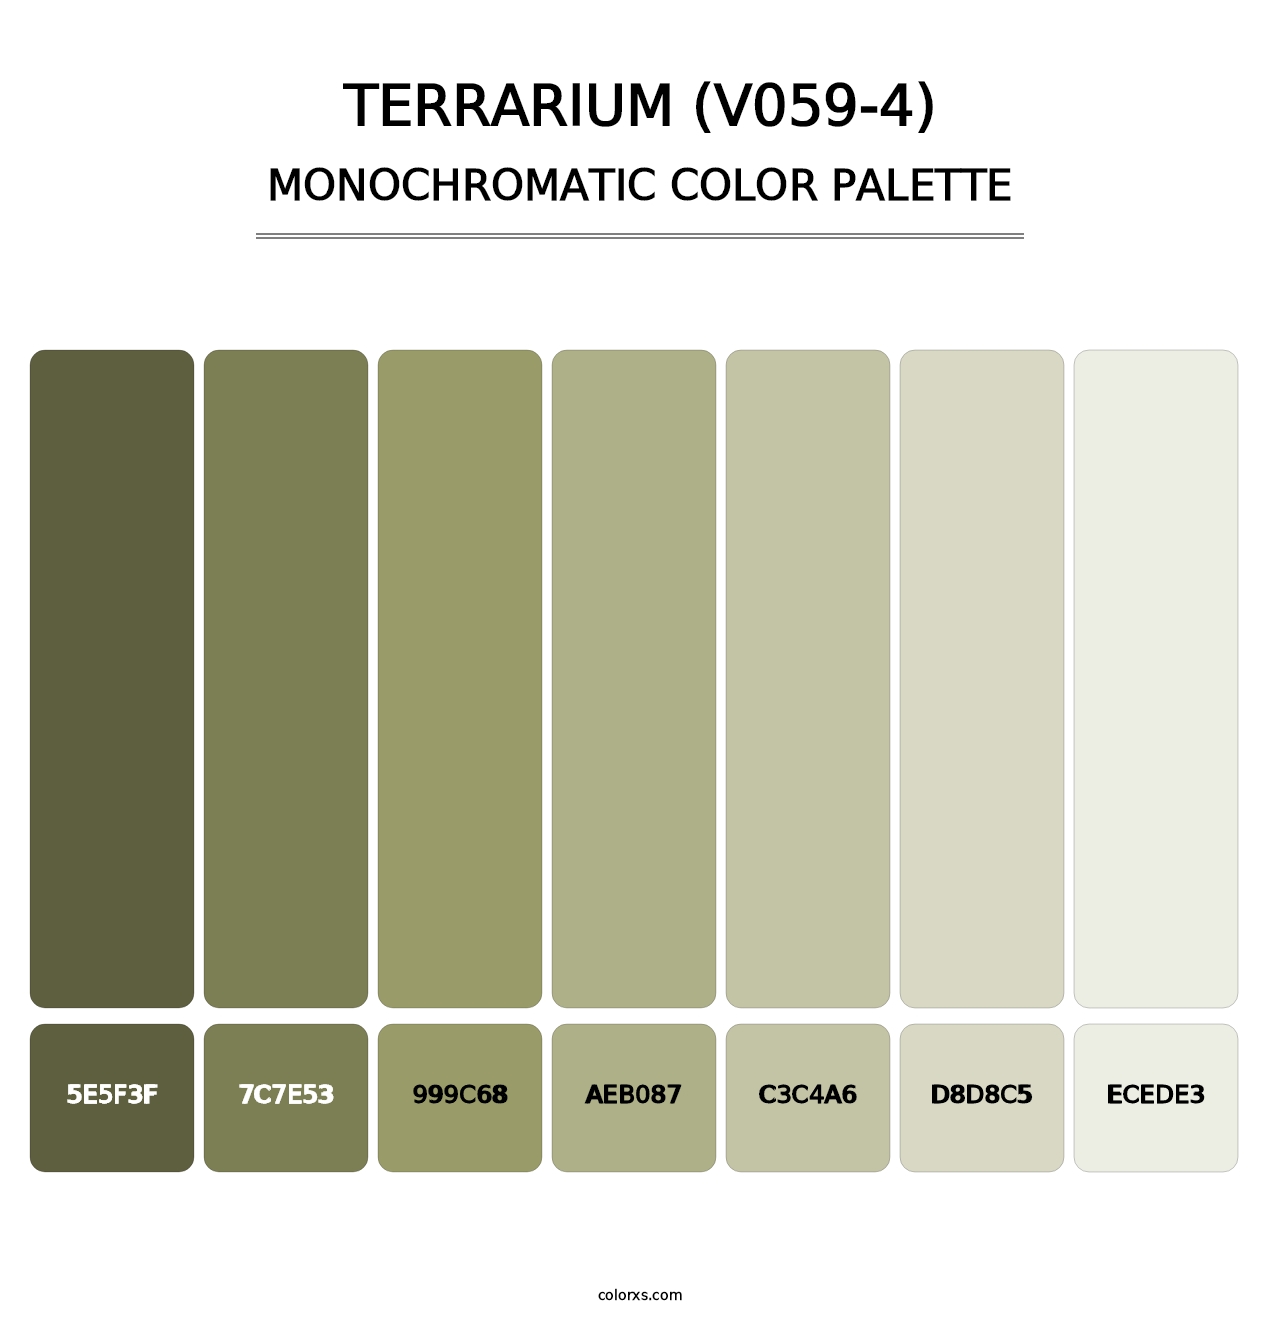 Terrarium (V059-4) - Monochromatic Color Palette